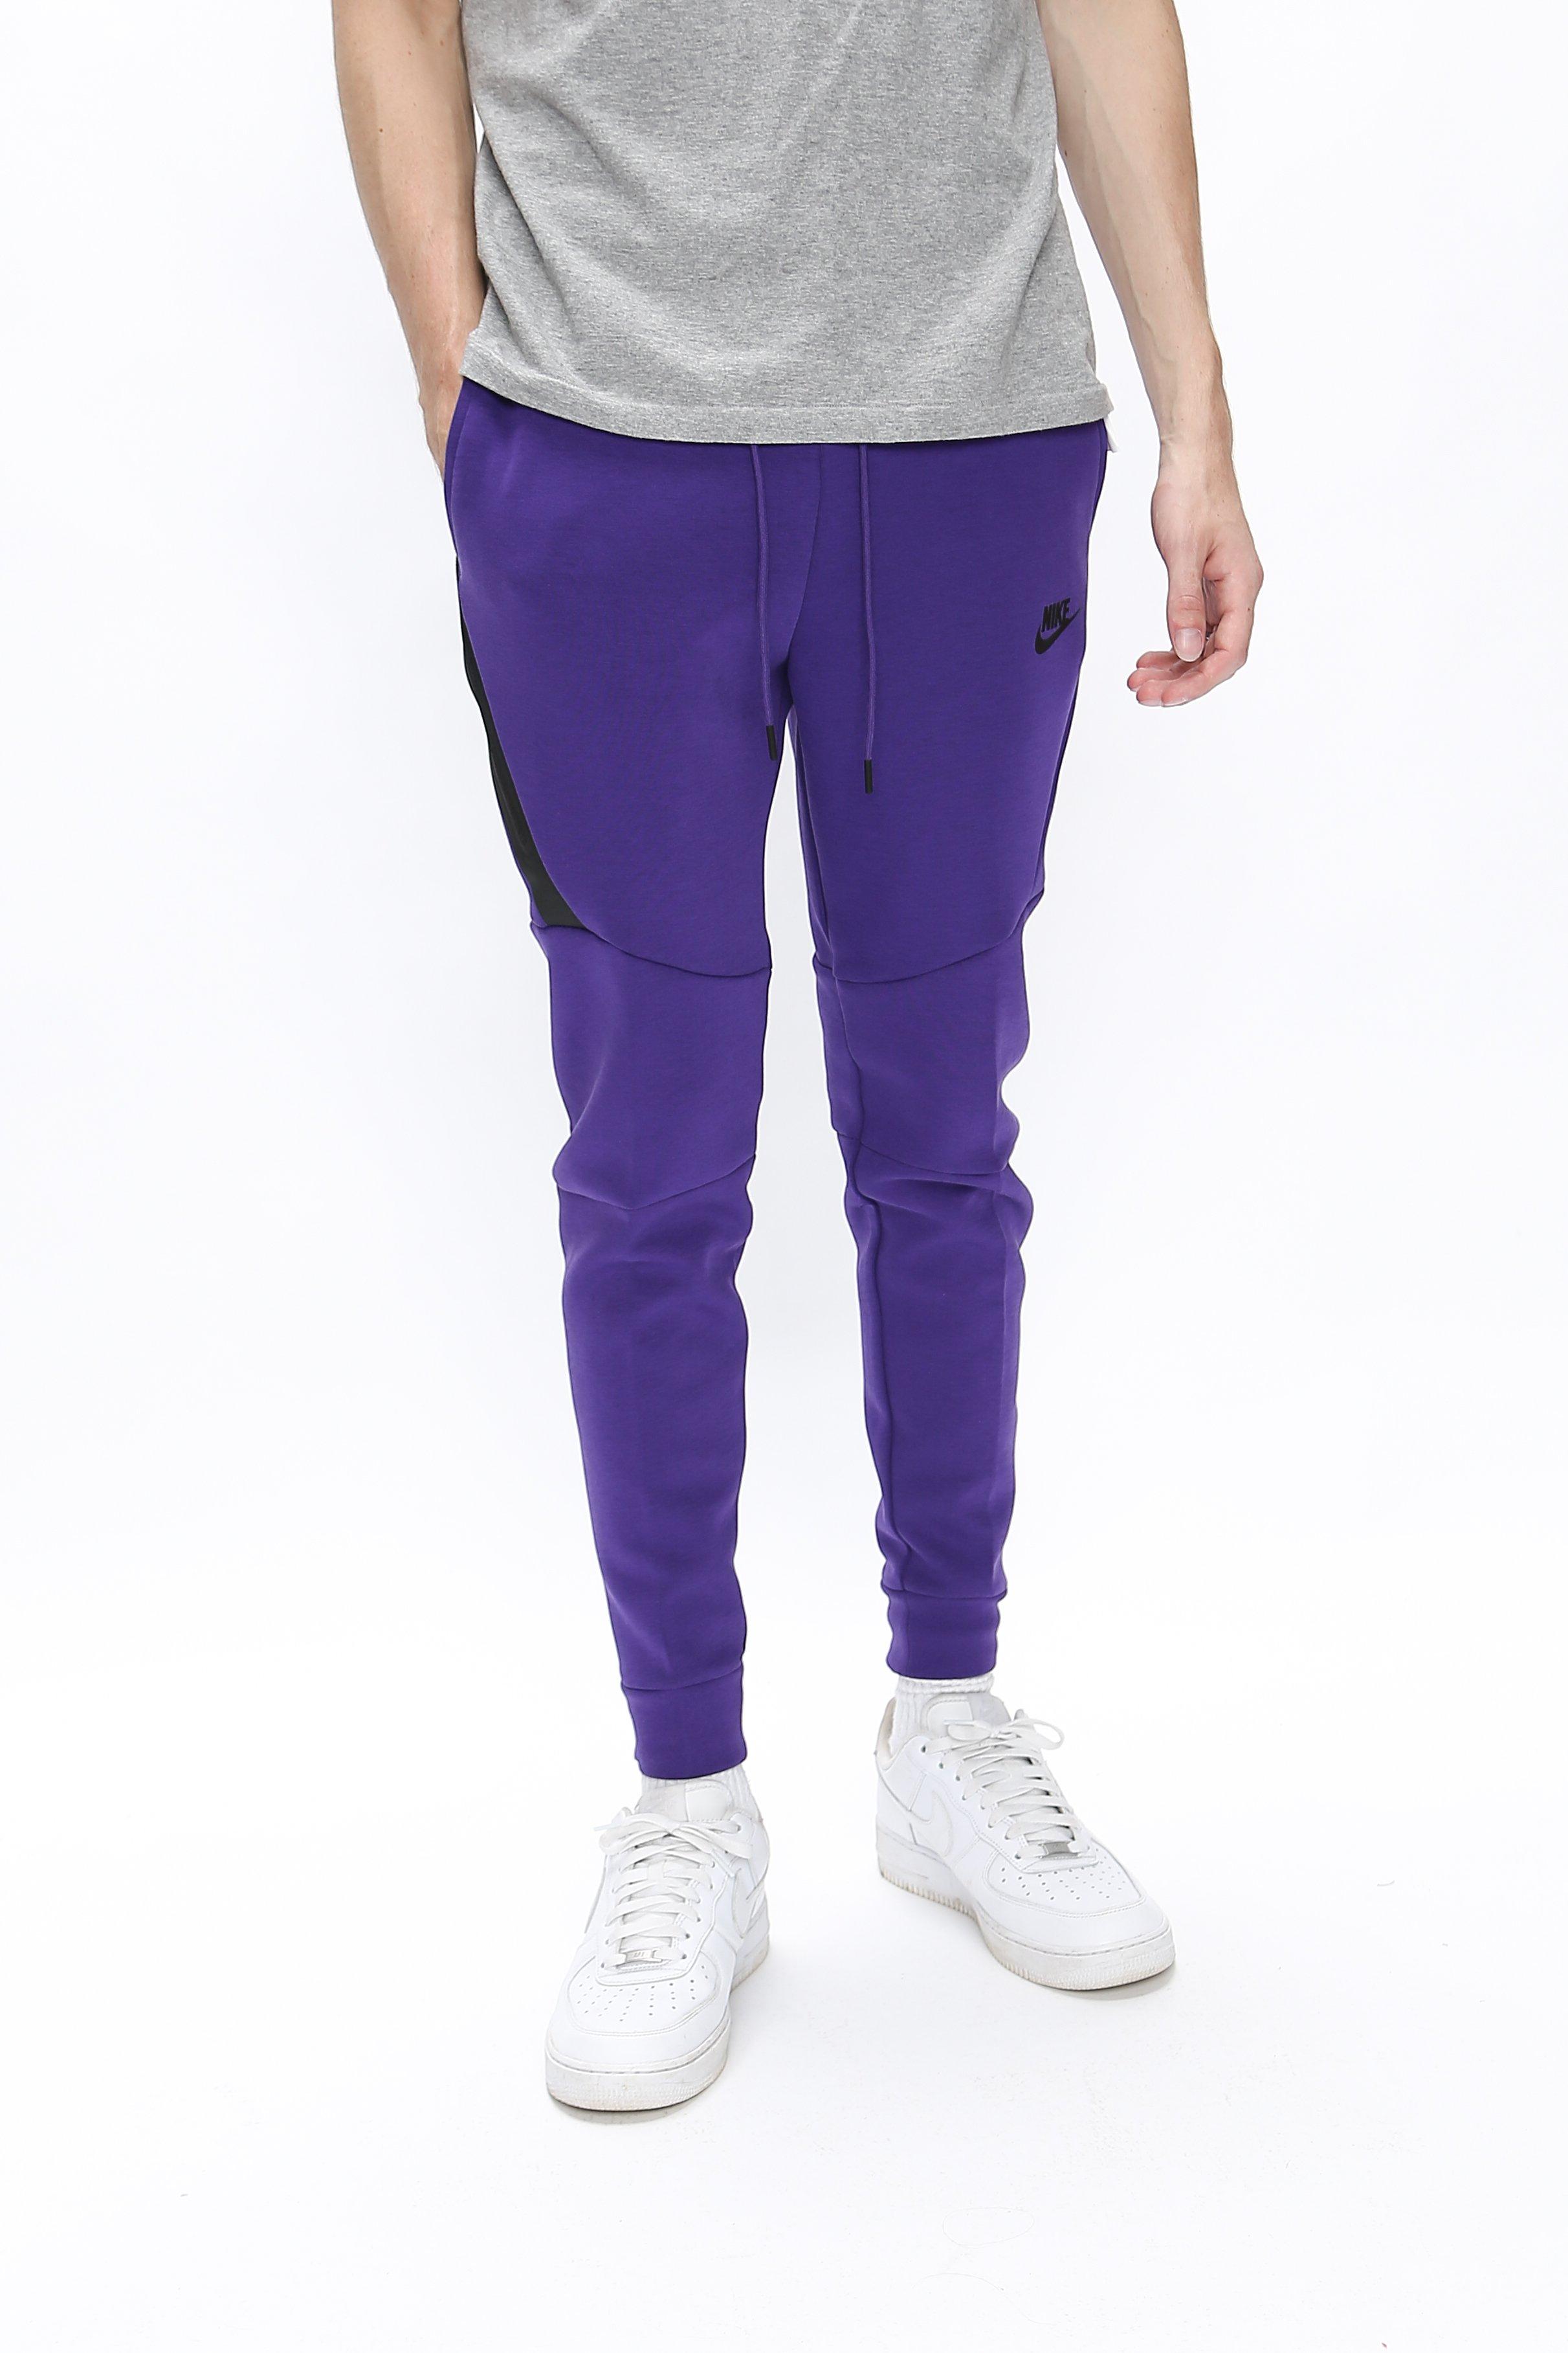 Nike Tech Fleece Jogger in Purple for Men - Lyst